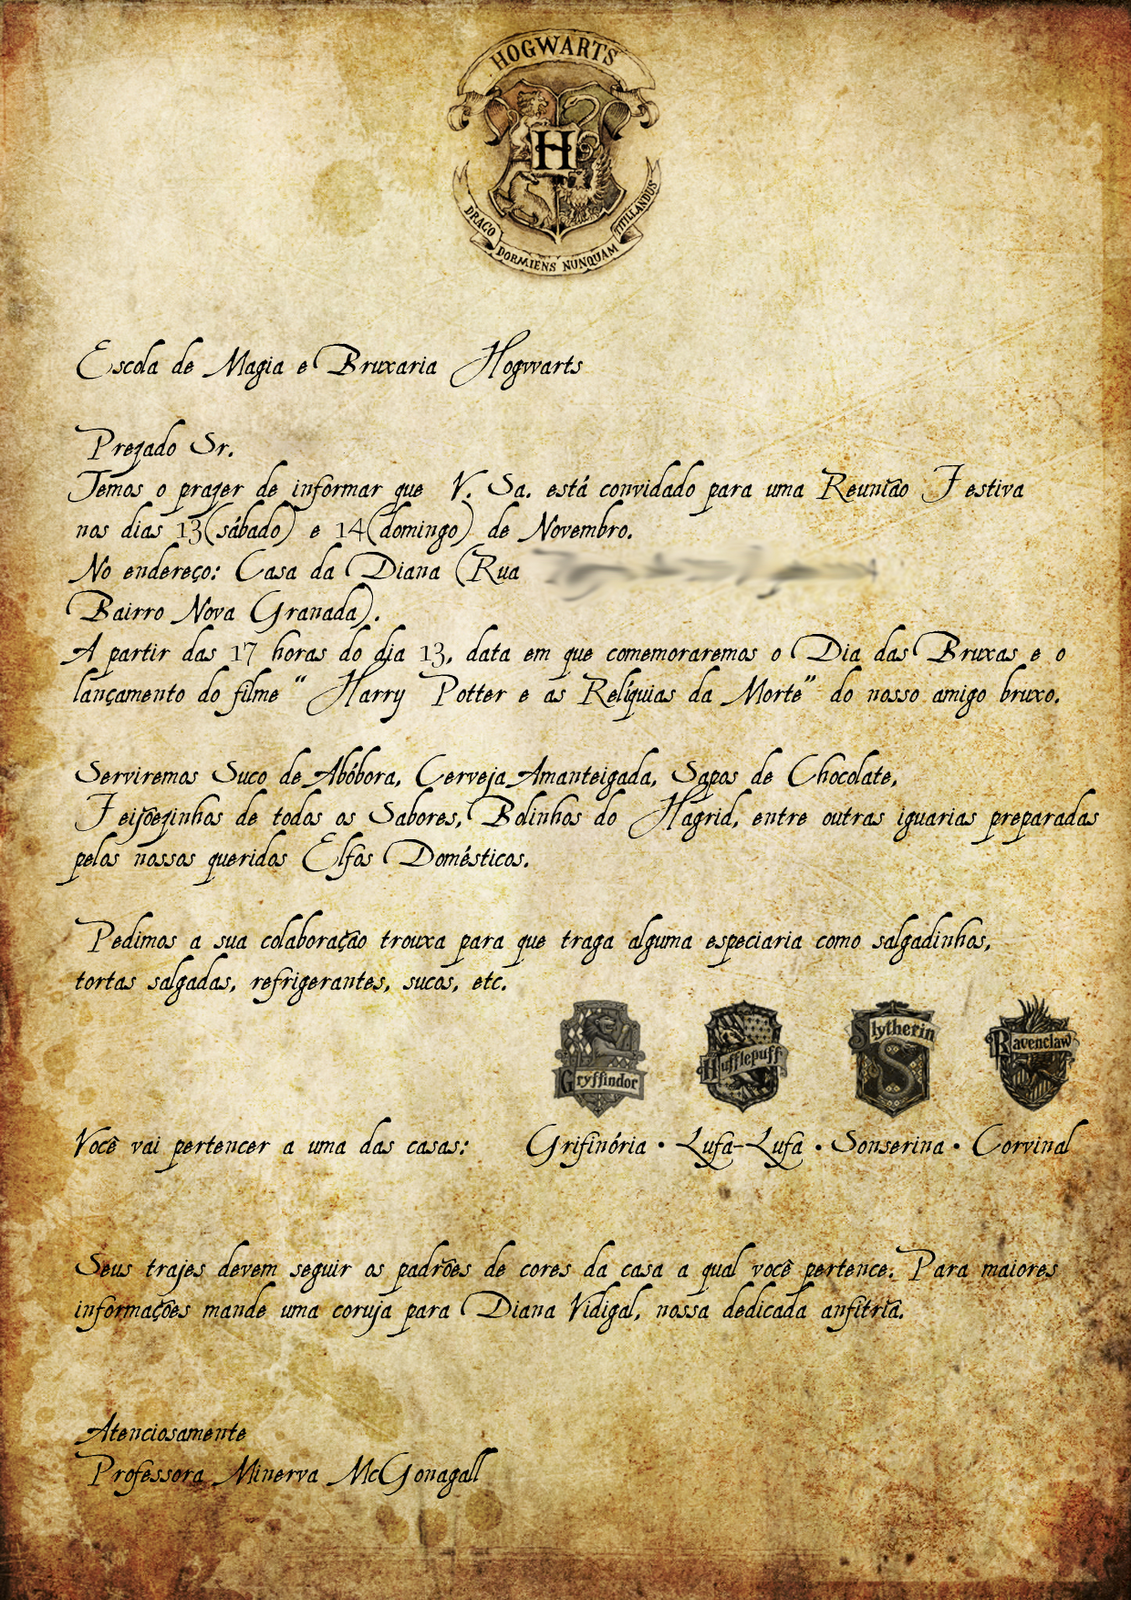 THIAGO BONIFÁCIO: Uma carta de Hogwarts